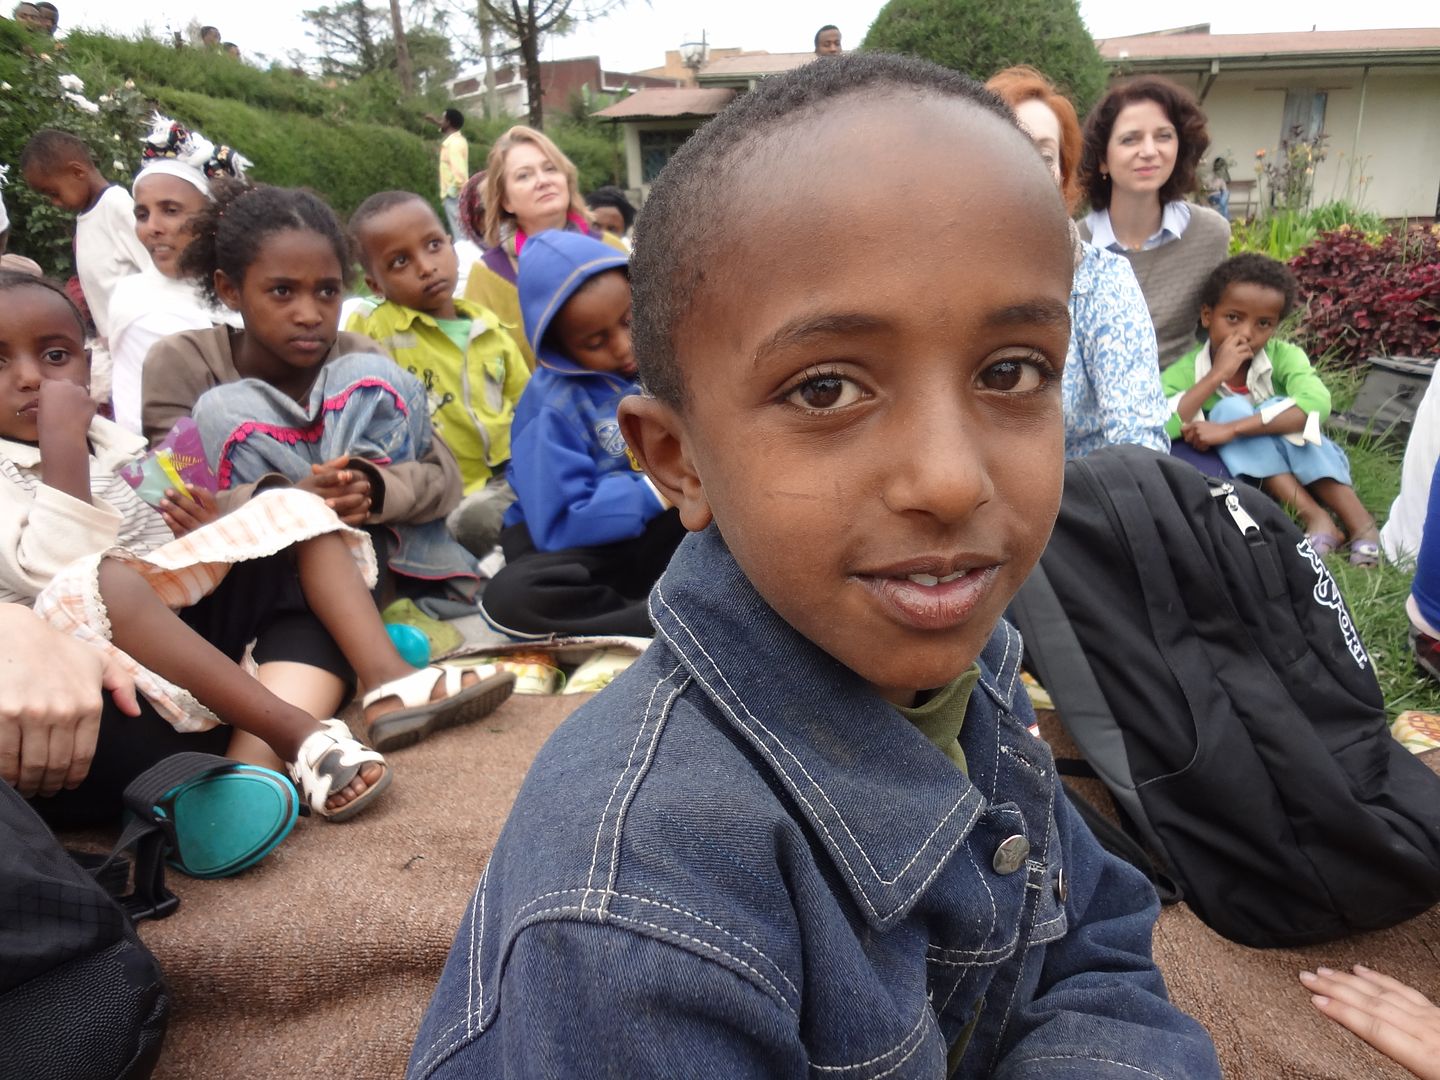 ONE moms in ethiopia